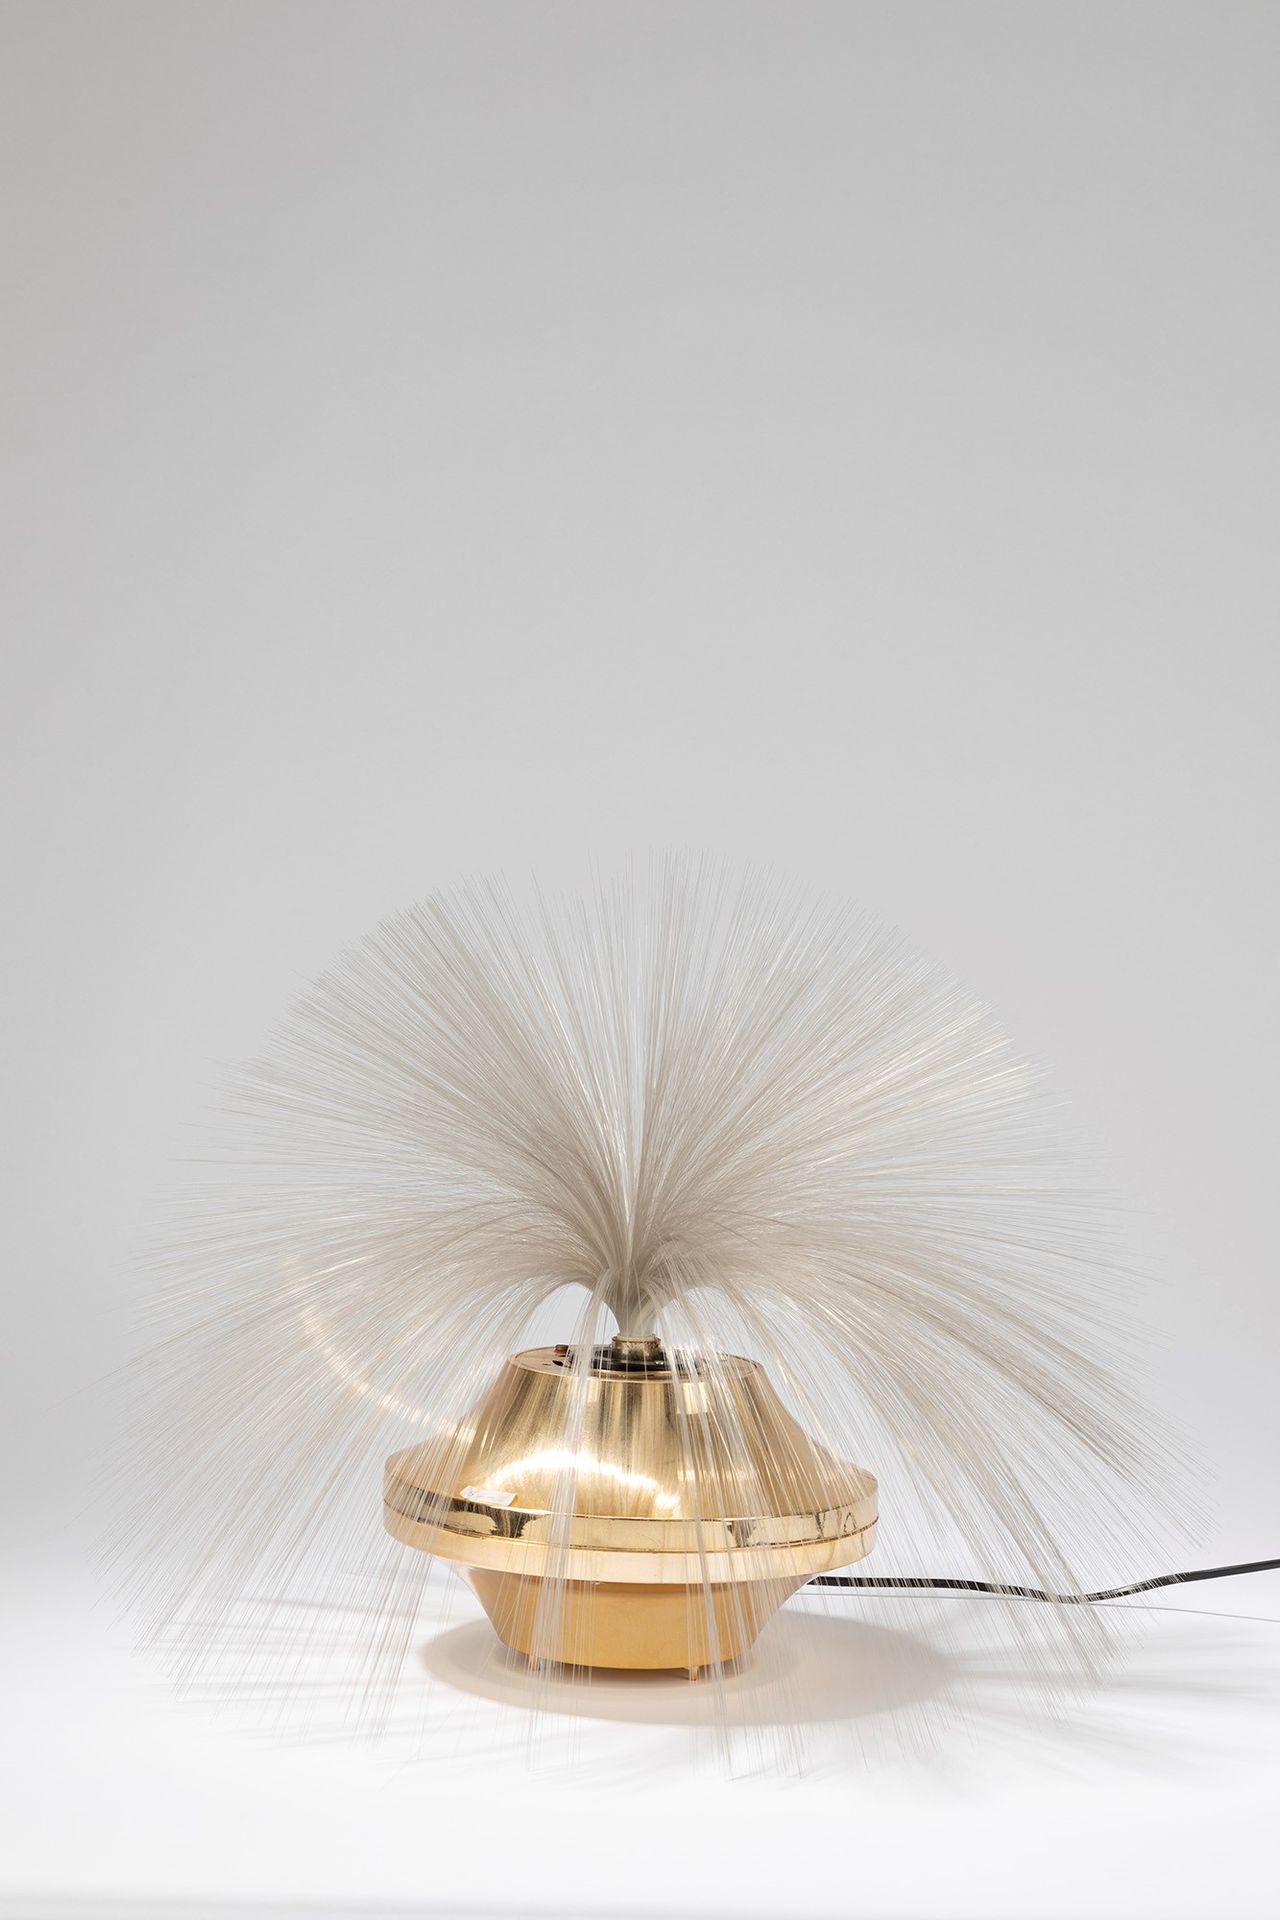 ITALIAN MANUFACTURE Lampe de table, période 70's

cm h 40 x dm 37
métal et fibre&hellip;